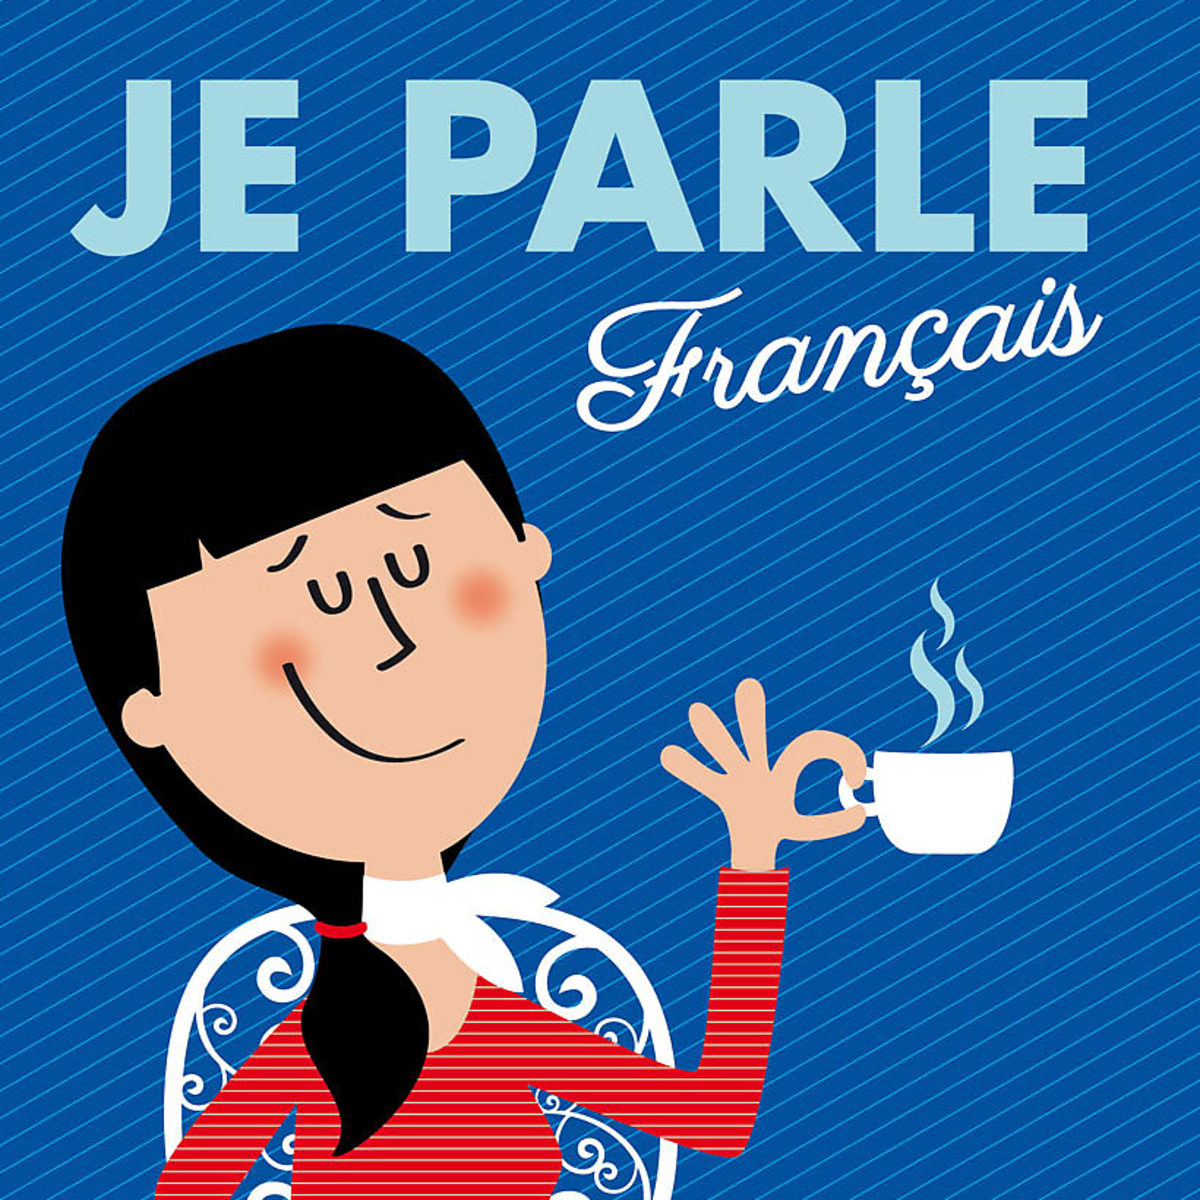 Get Parler Français Francais Pictures